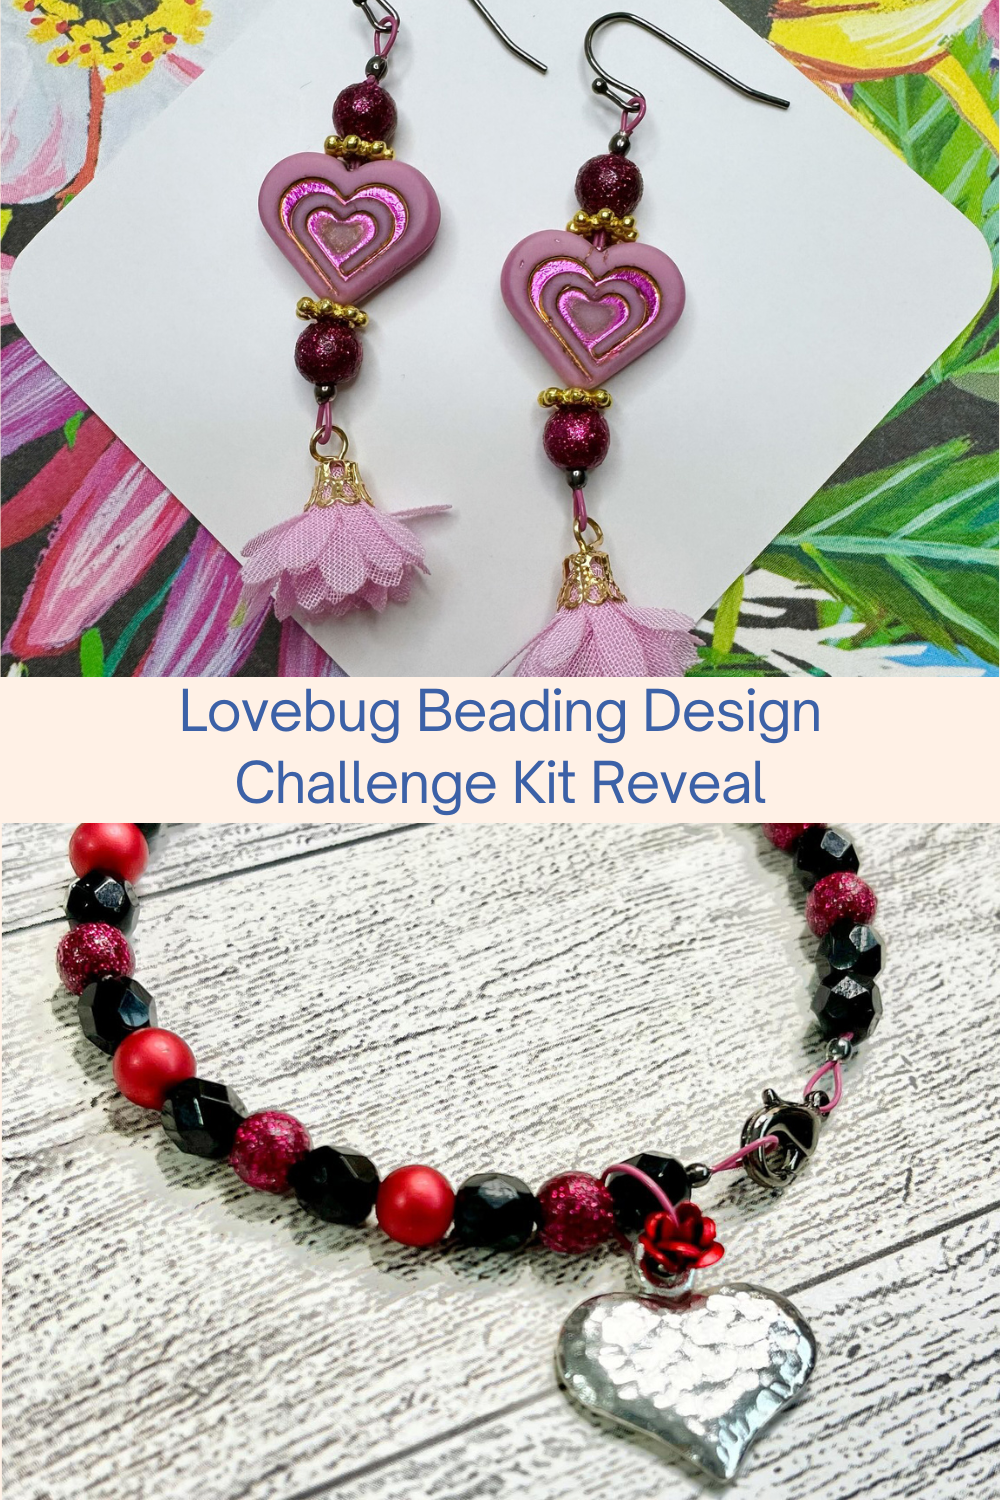 Lovebug Beading Design Challenge Kit Reveal